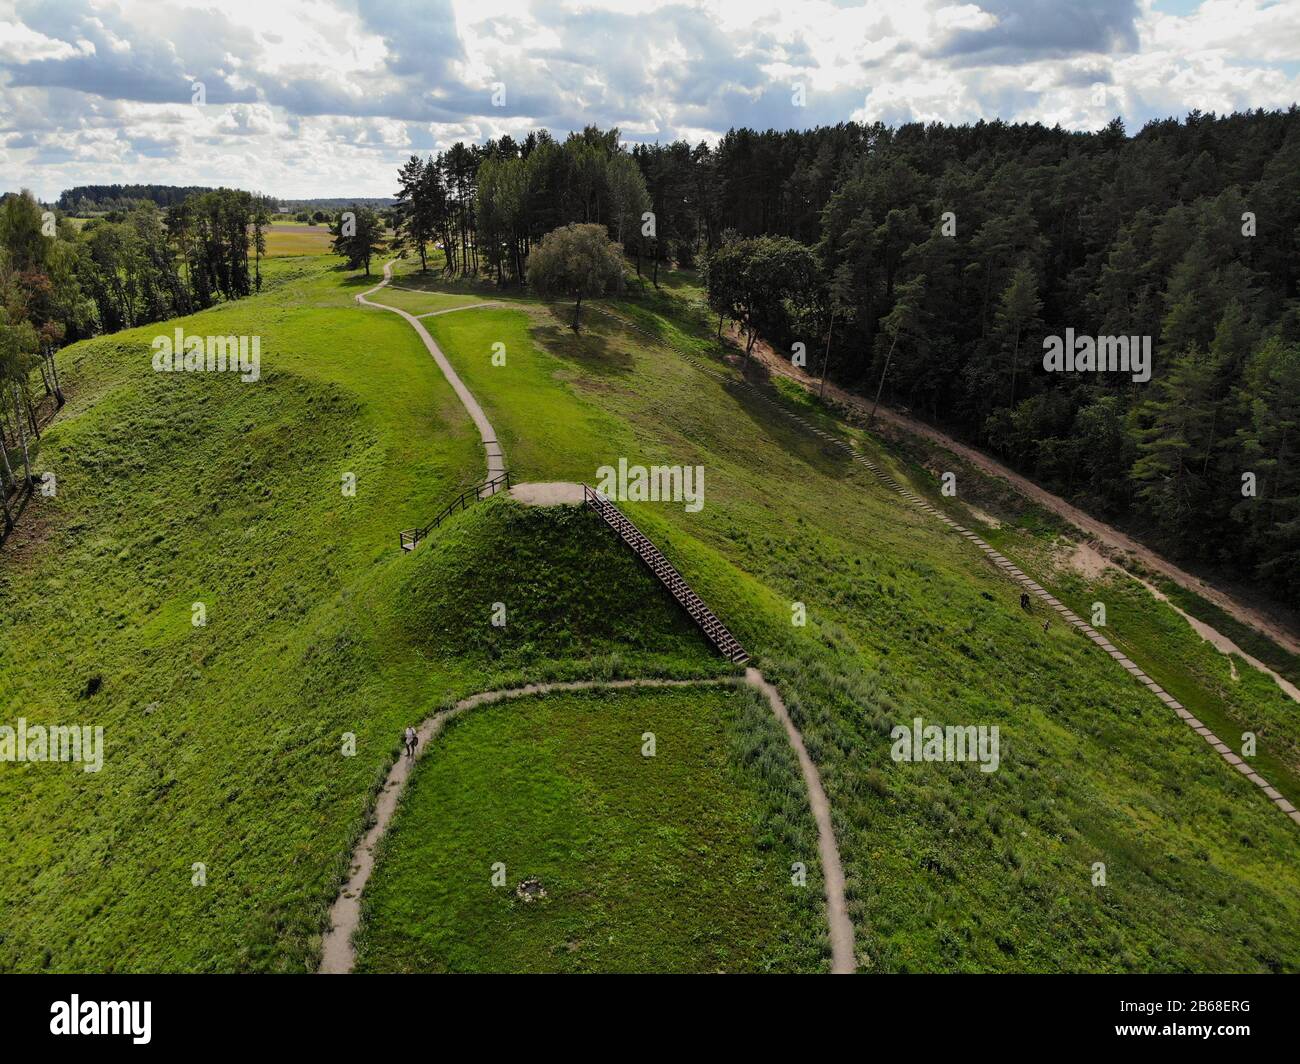 Historical Pypliai mound in Kacergine town, Lithuania. Aerial view Stock Photo